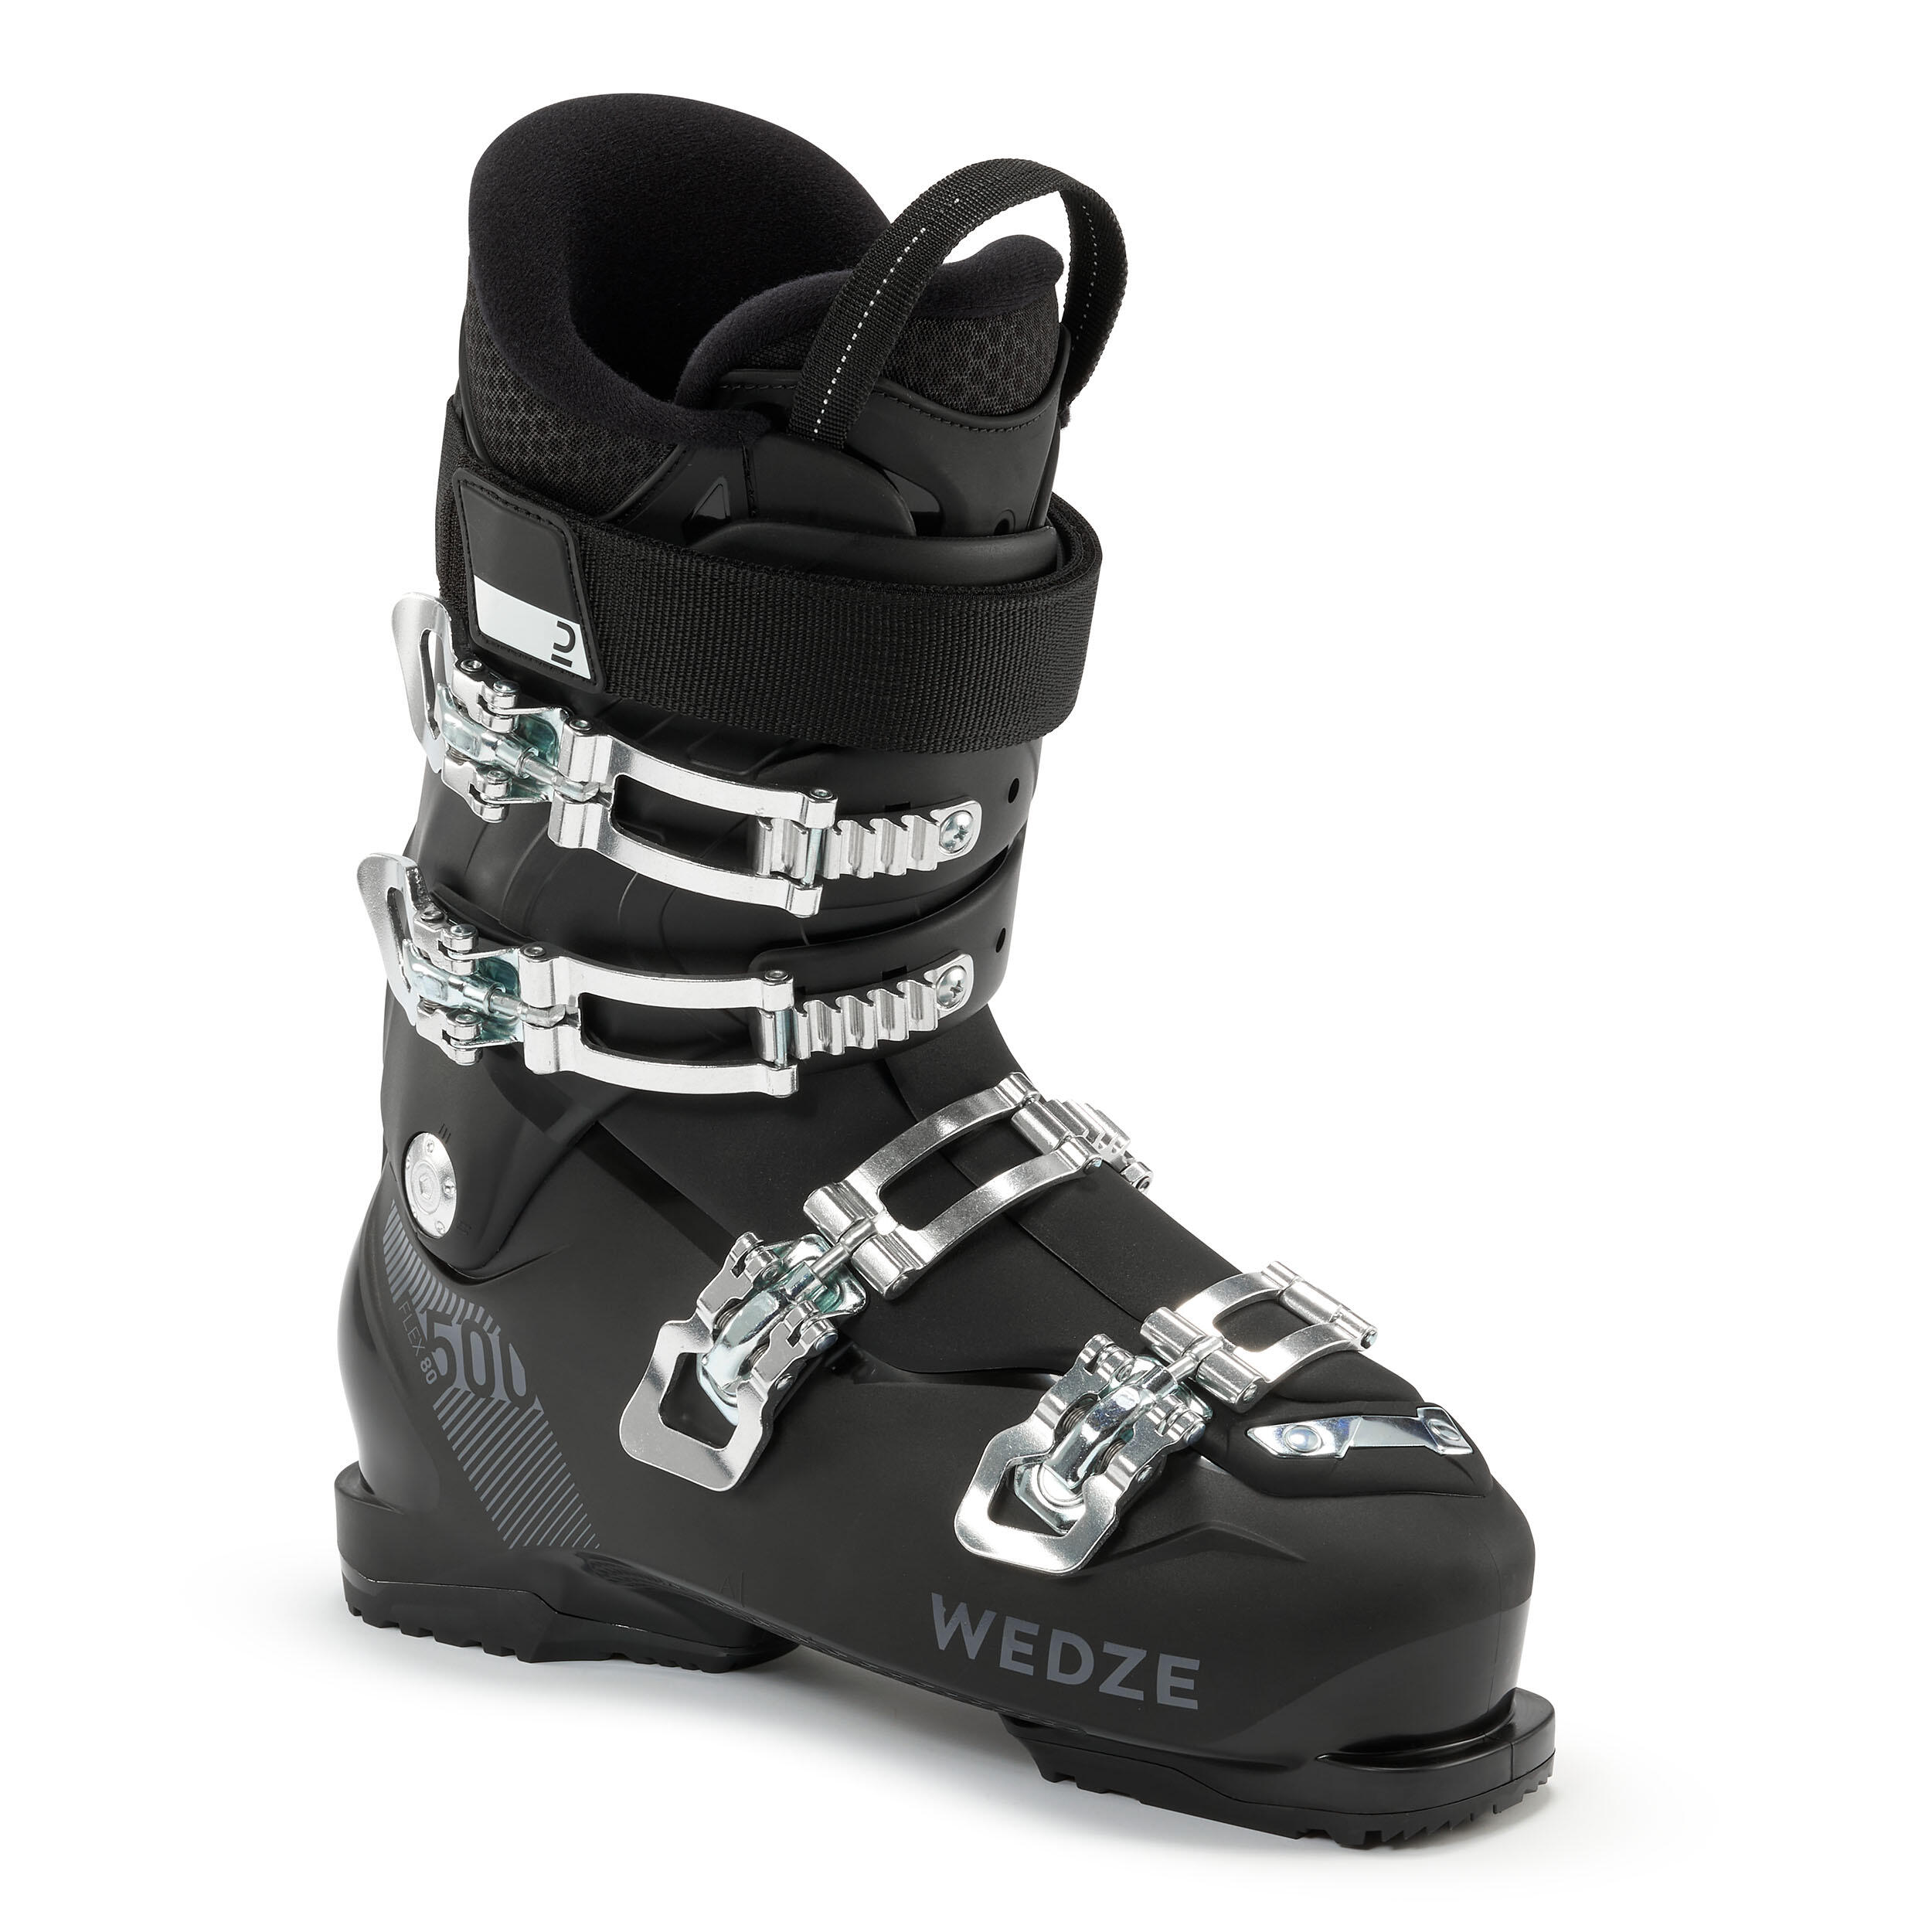 Men’s Ski Boots – 500 Black - Wedze - Decathlon